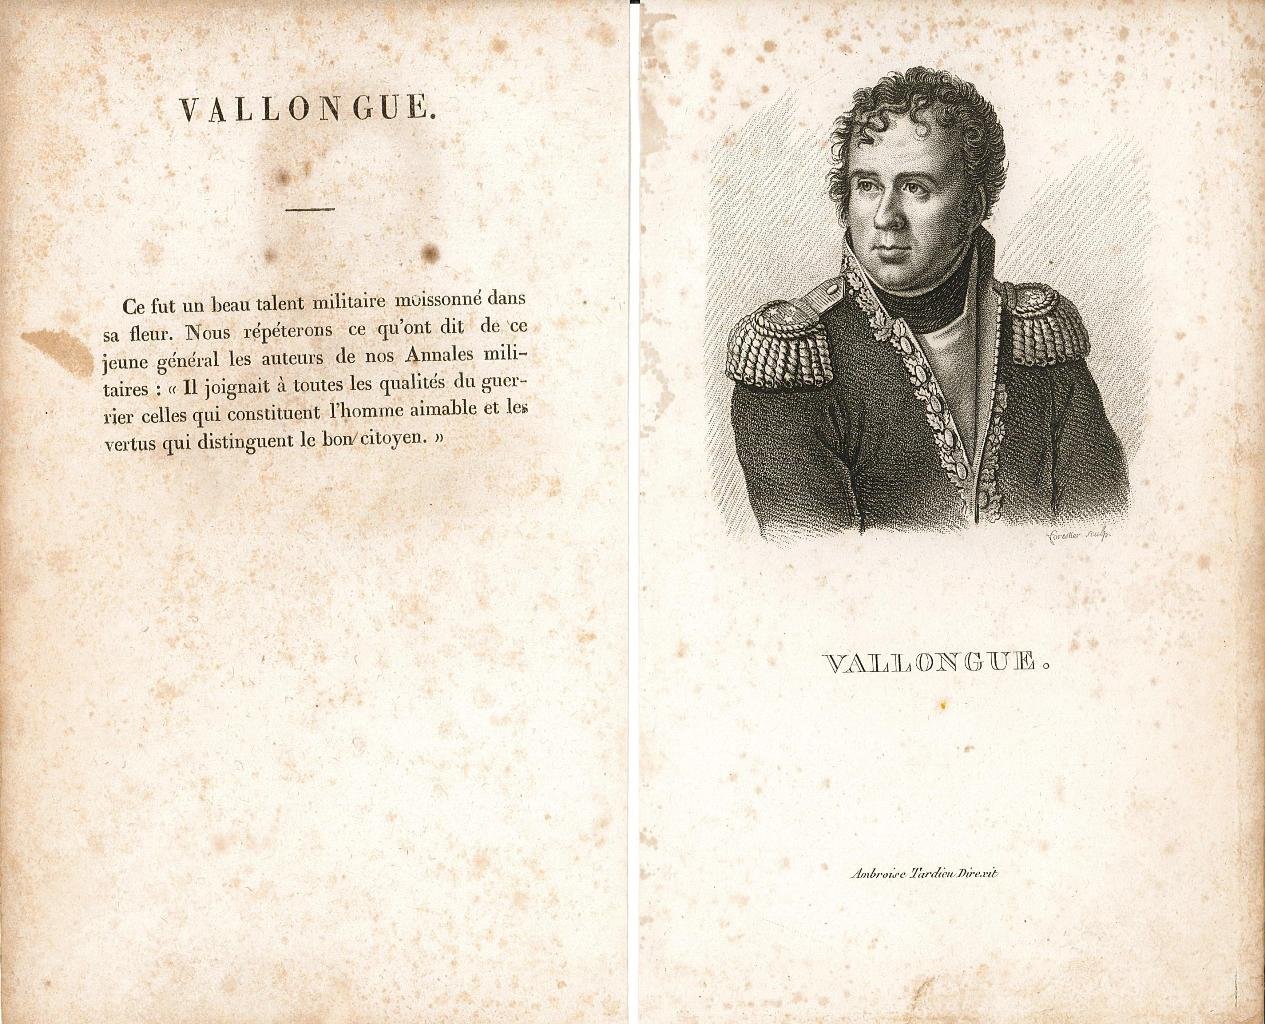 Vallongue